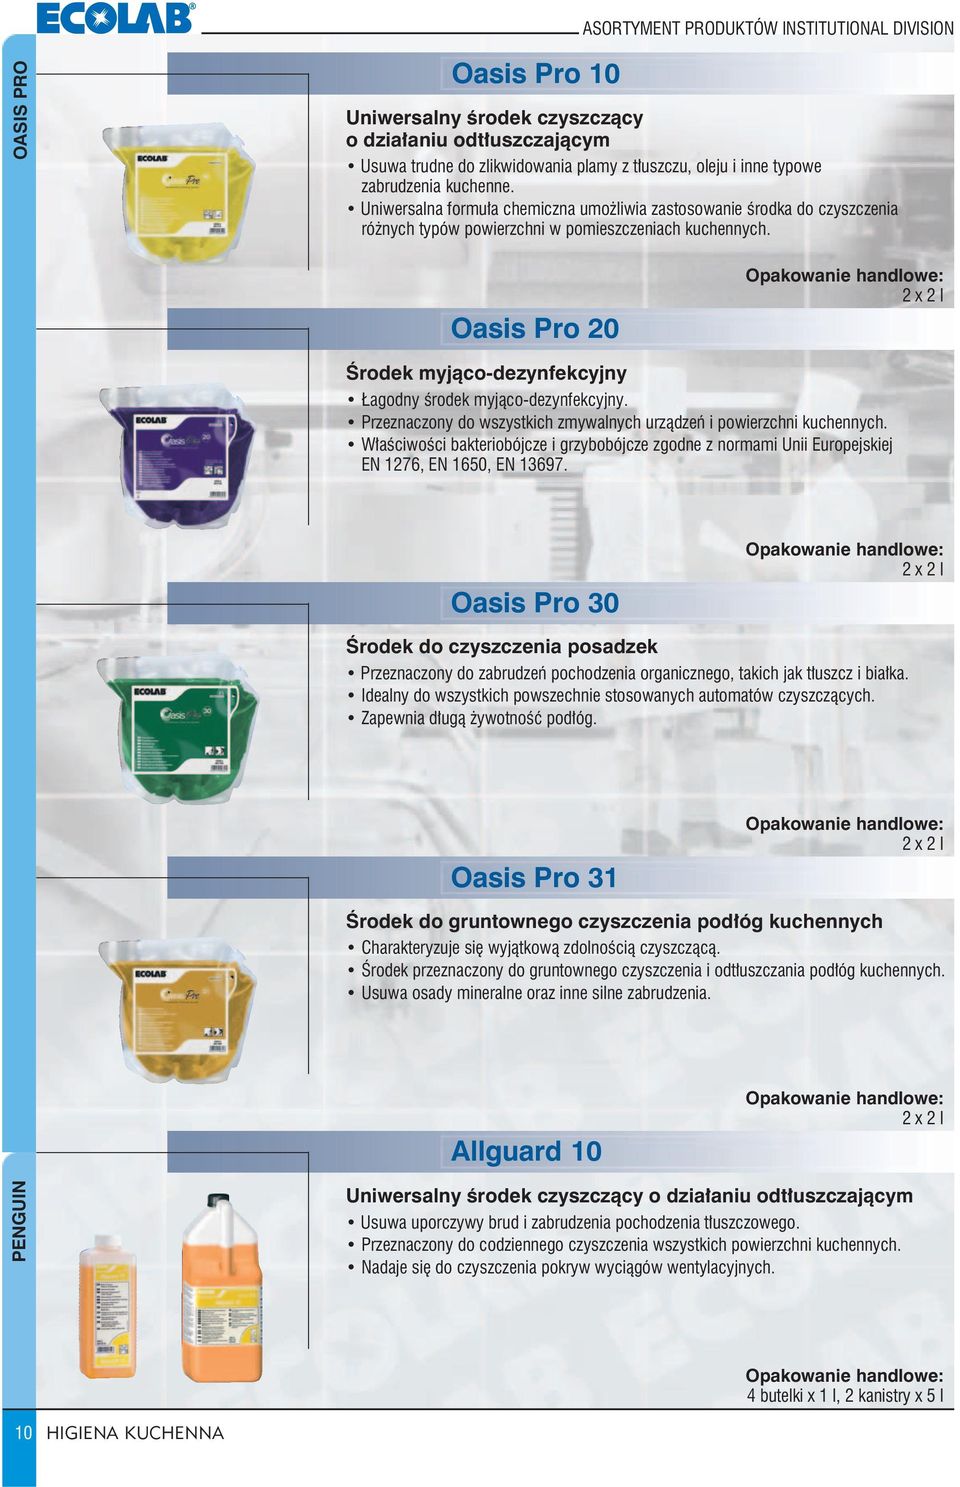 Oasis Pro 20 2 x 2 l Środek myjąco-dezynfekcyjny Łagodny środek myjąco-dezynfekcyjny. Przeznaczony do wszystkich zmywalnych urządzeń i powierzchni kuchennych.